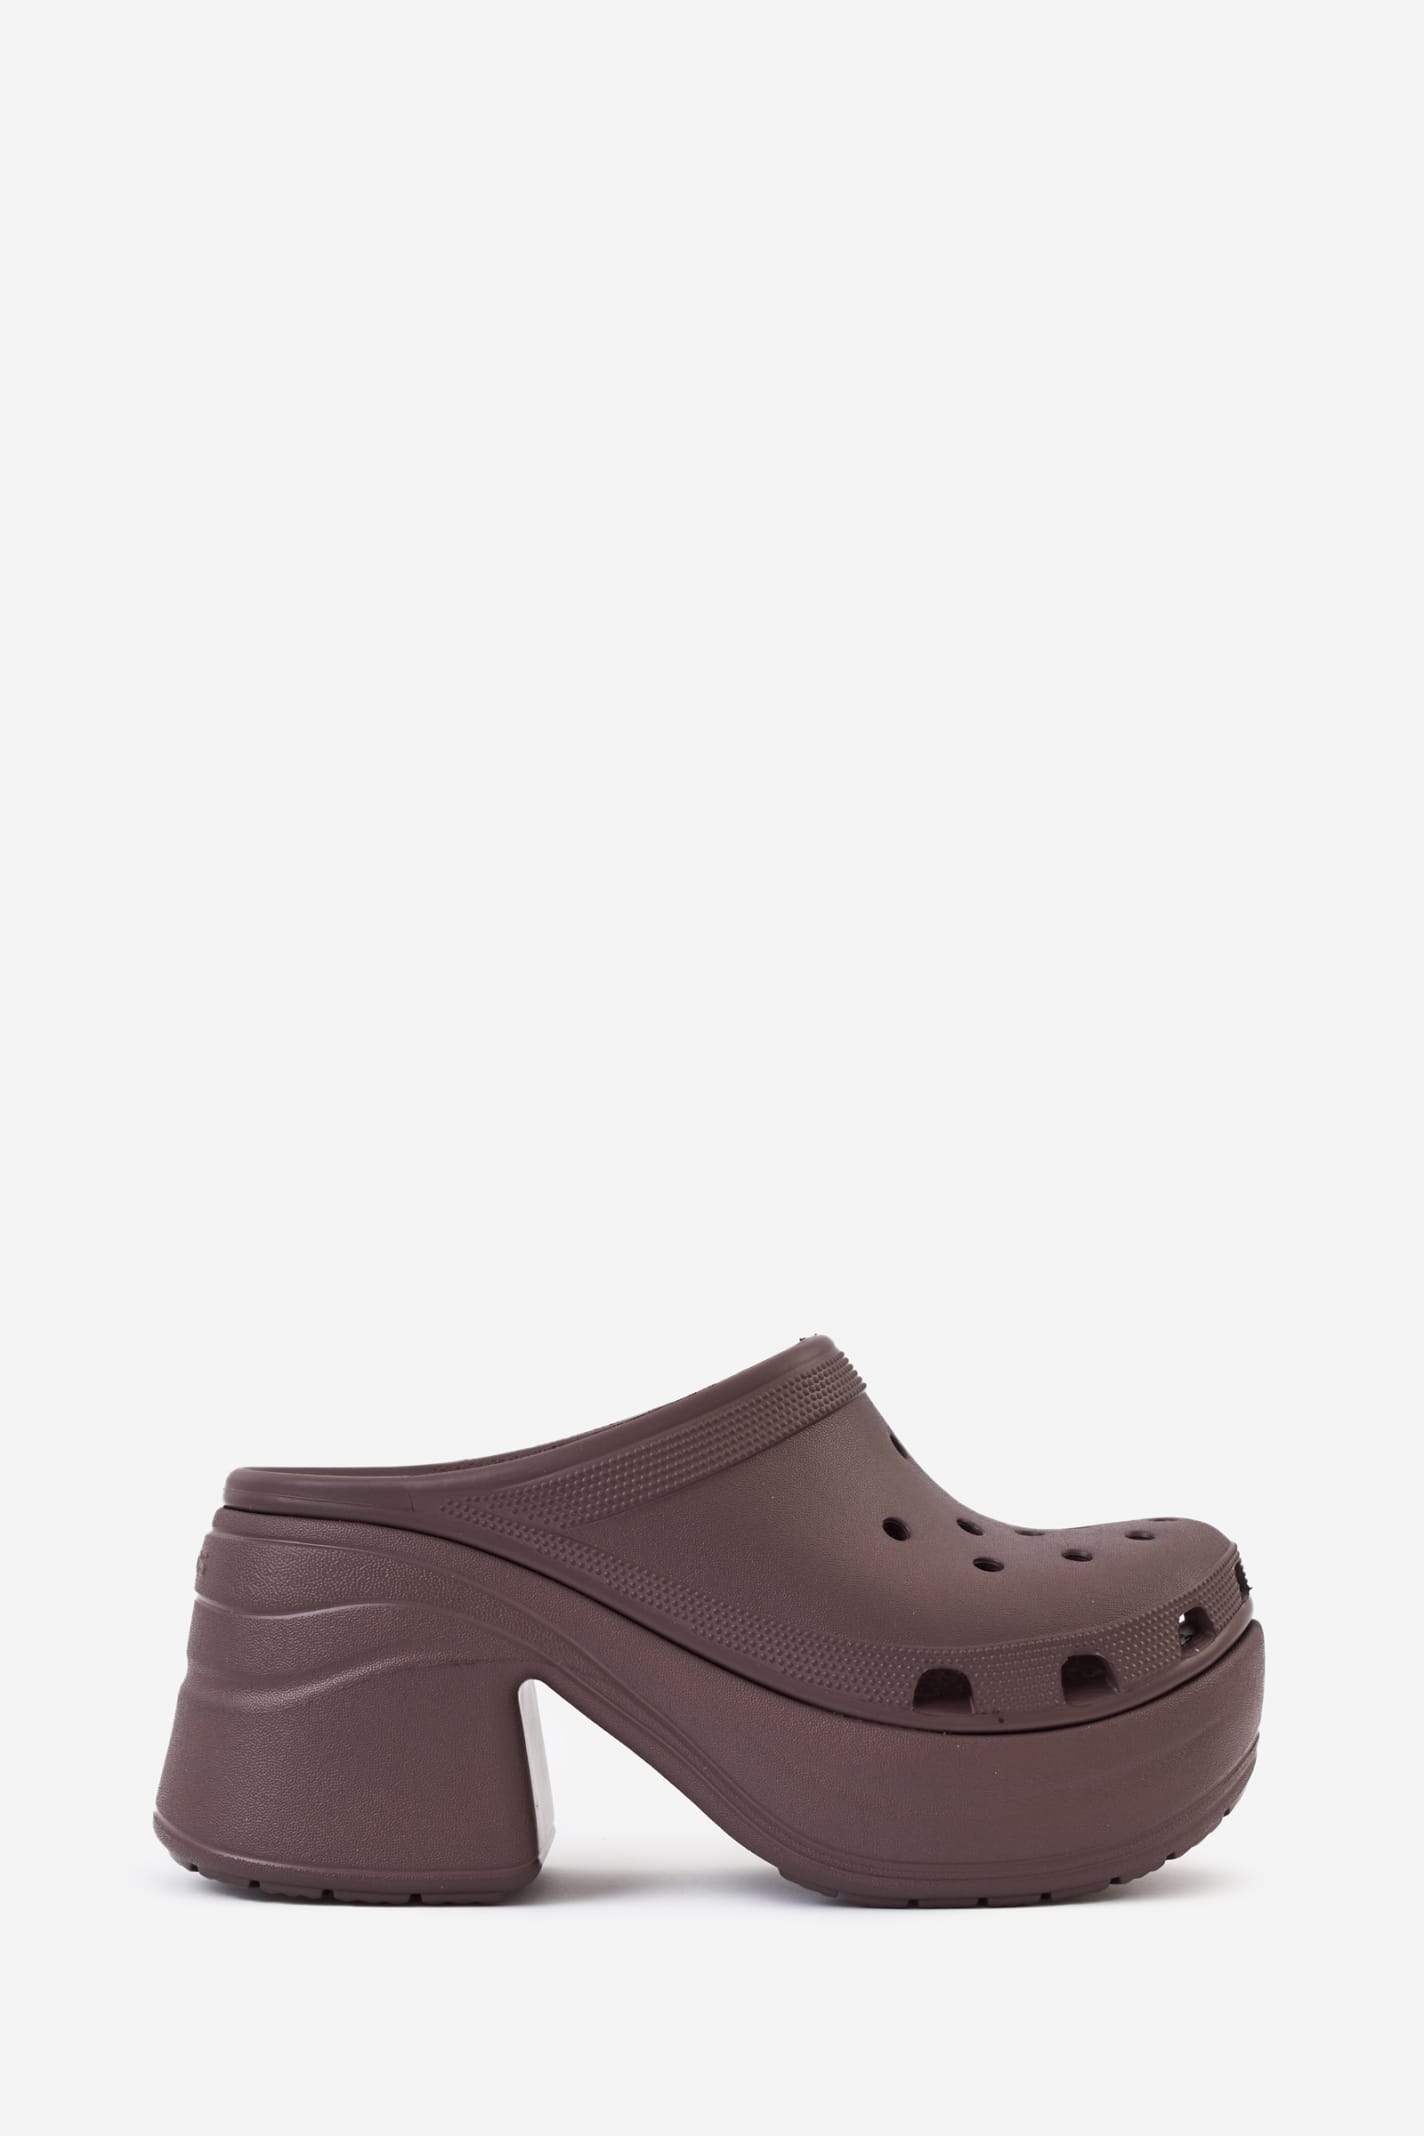 Shop Crocs Siren Clog Sandals In Brown